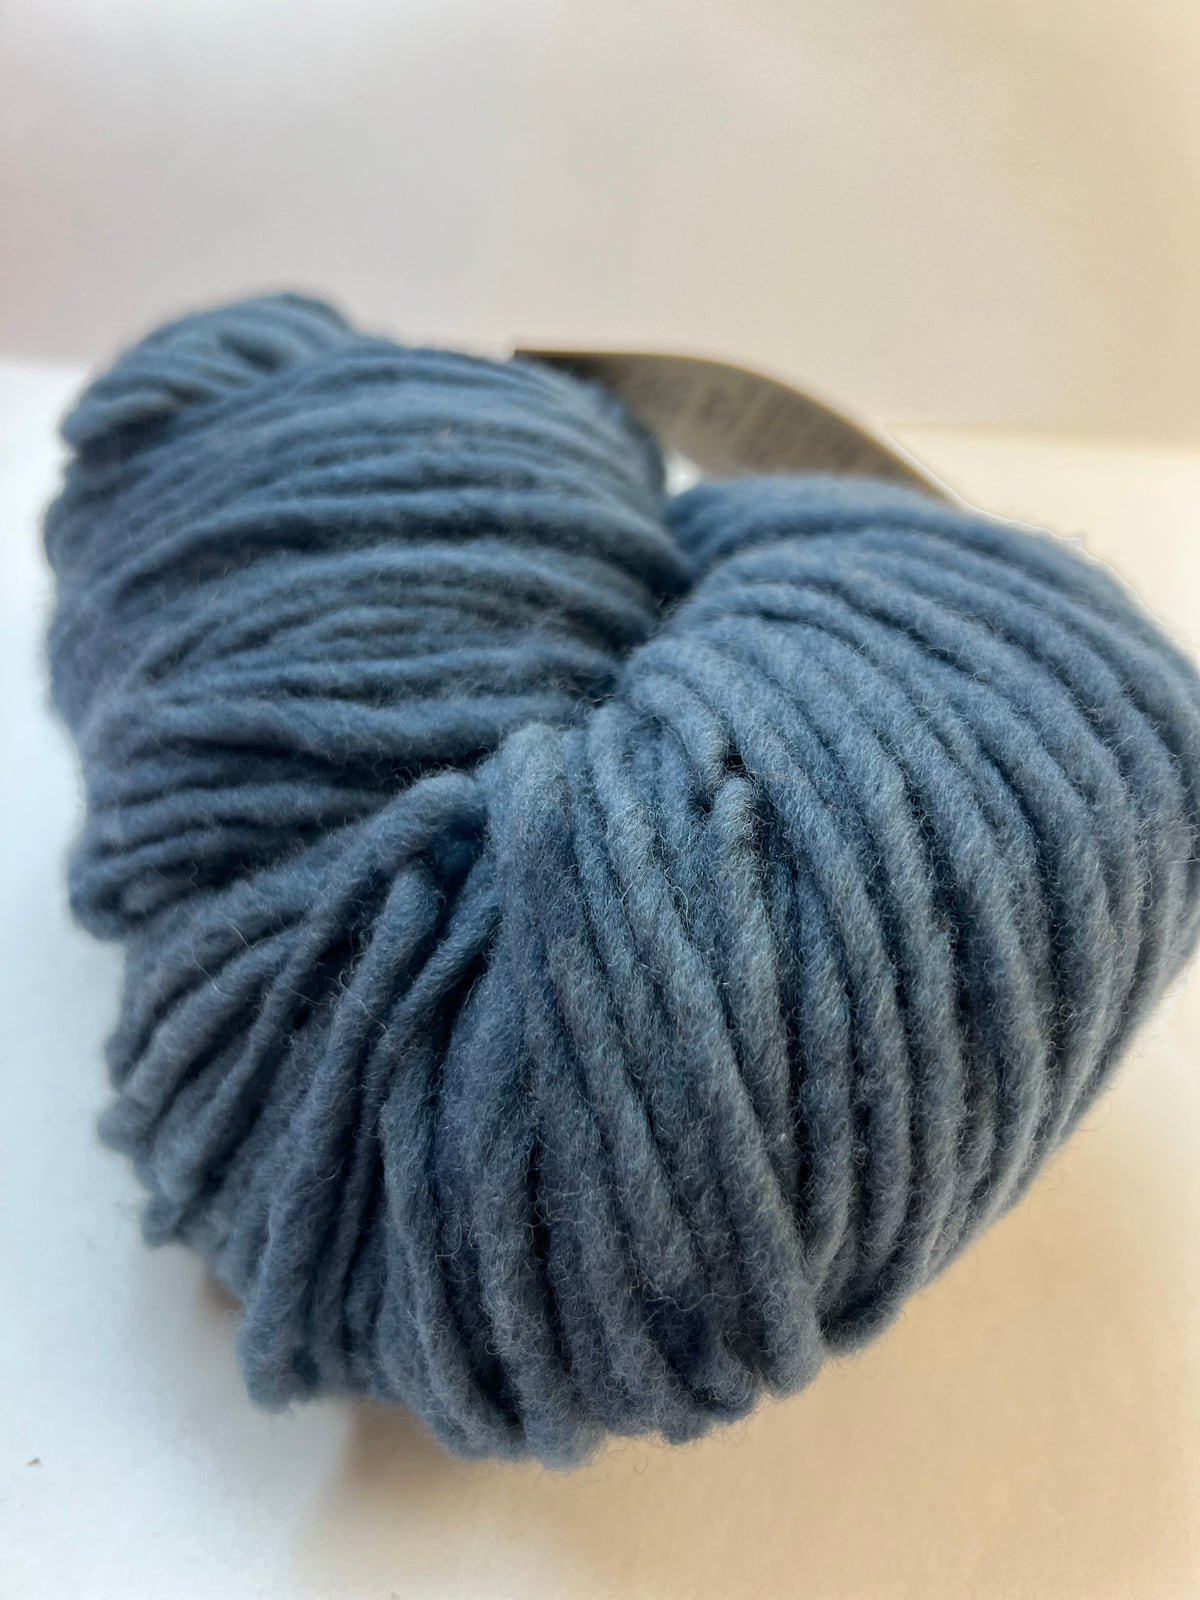 Urso Yarn Co. - Polaire (chunky)